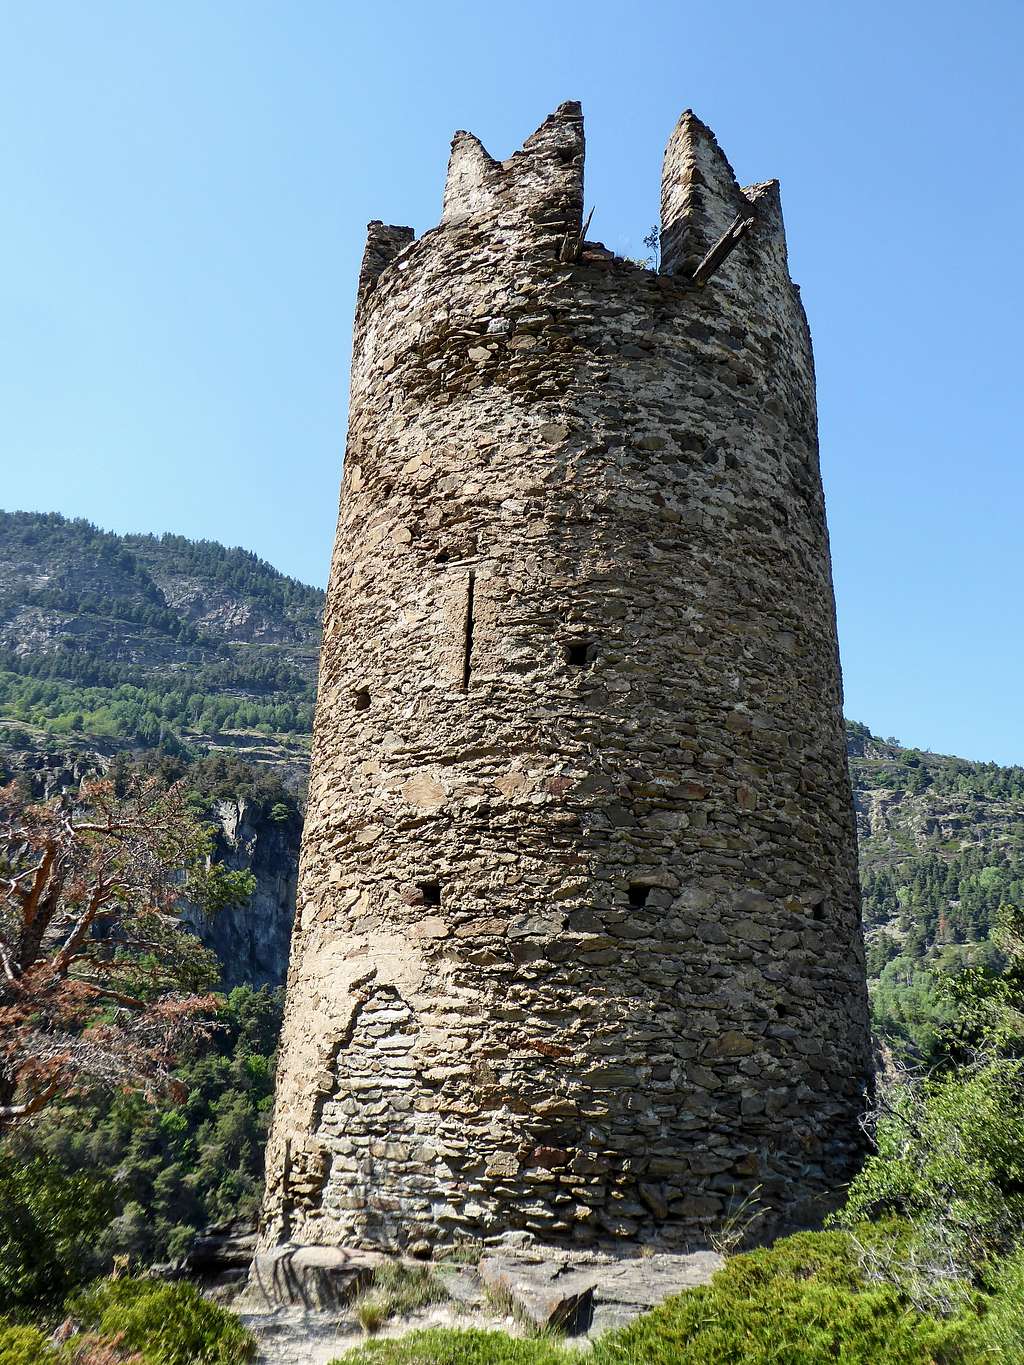 The tower of Montmayeur castle